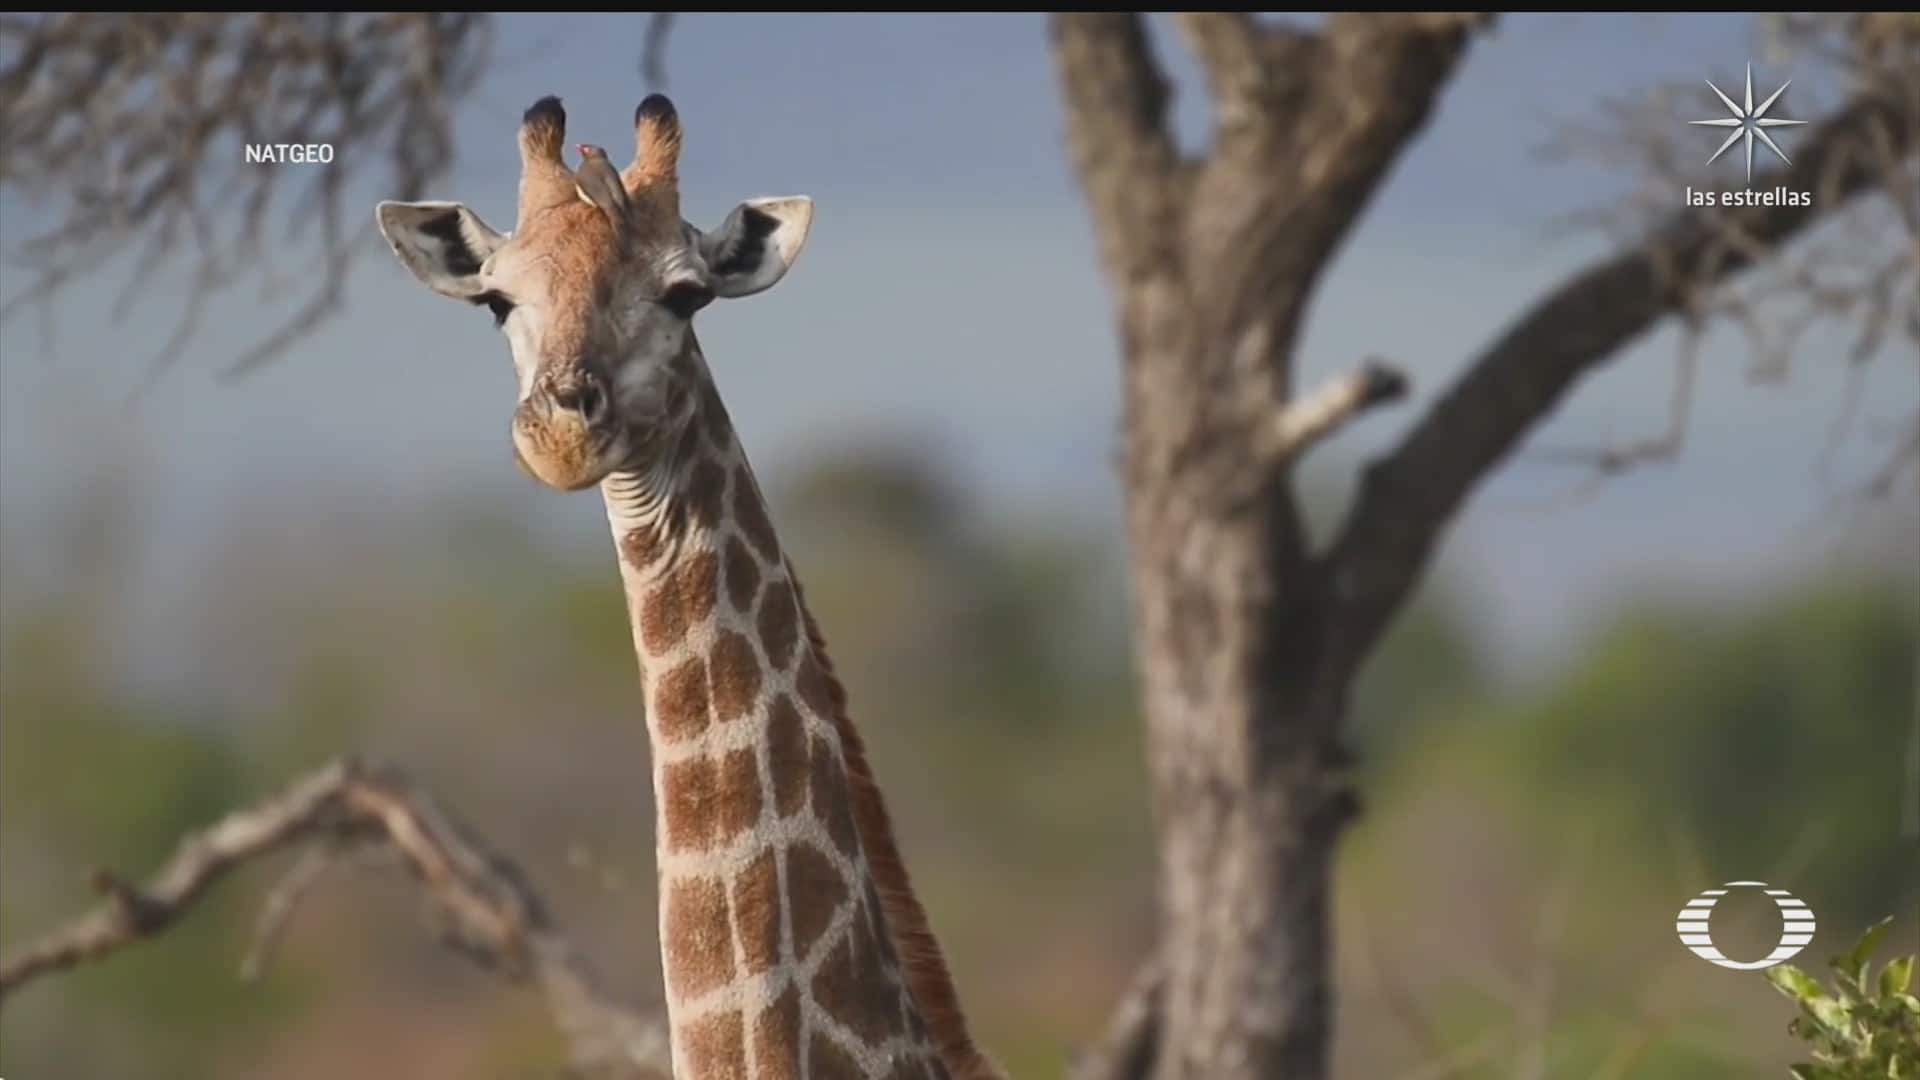 jirafas hembras viven varios anos mas tras terminar su vida fertil